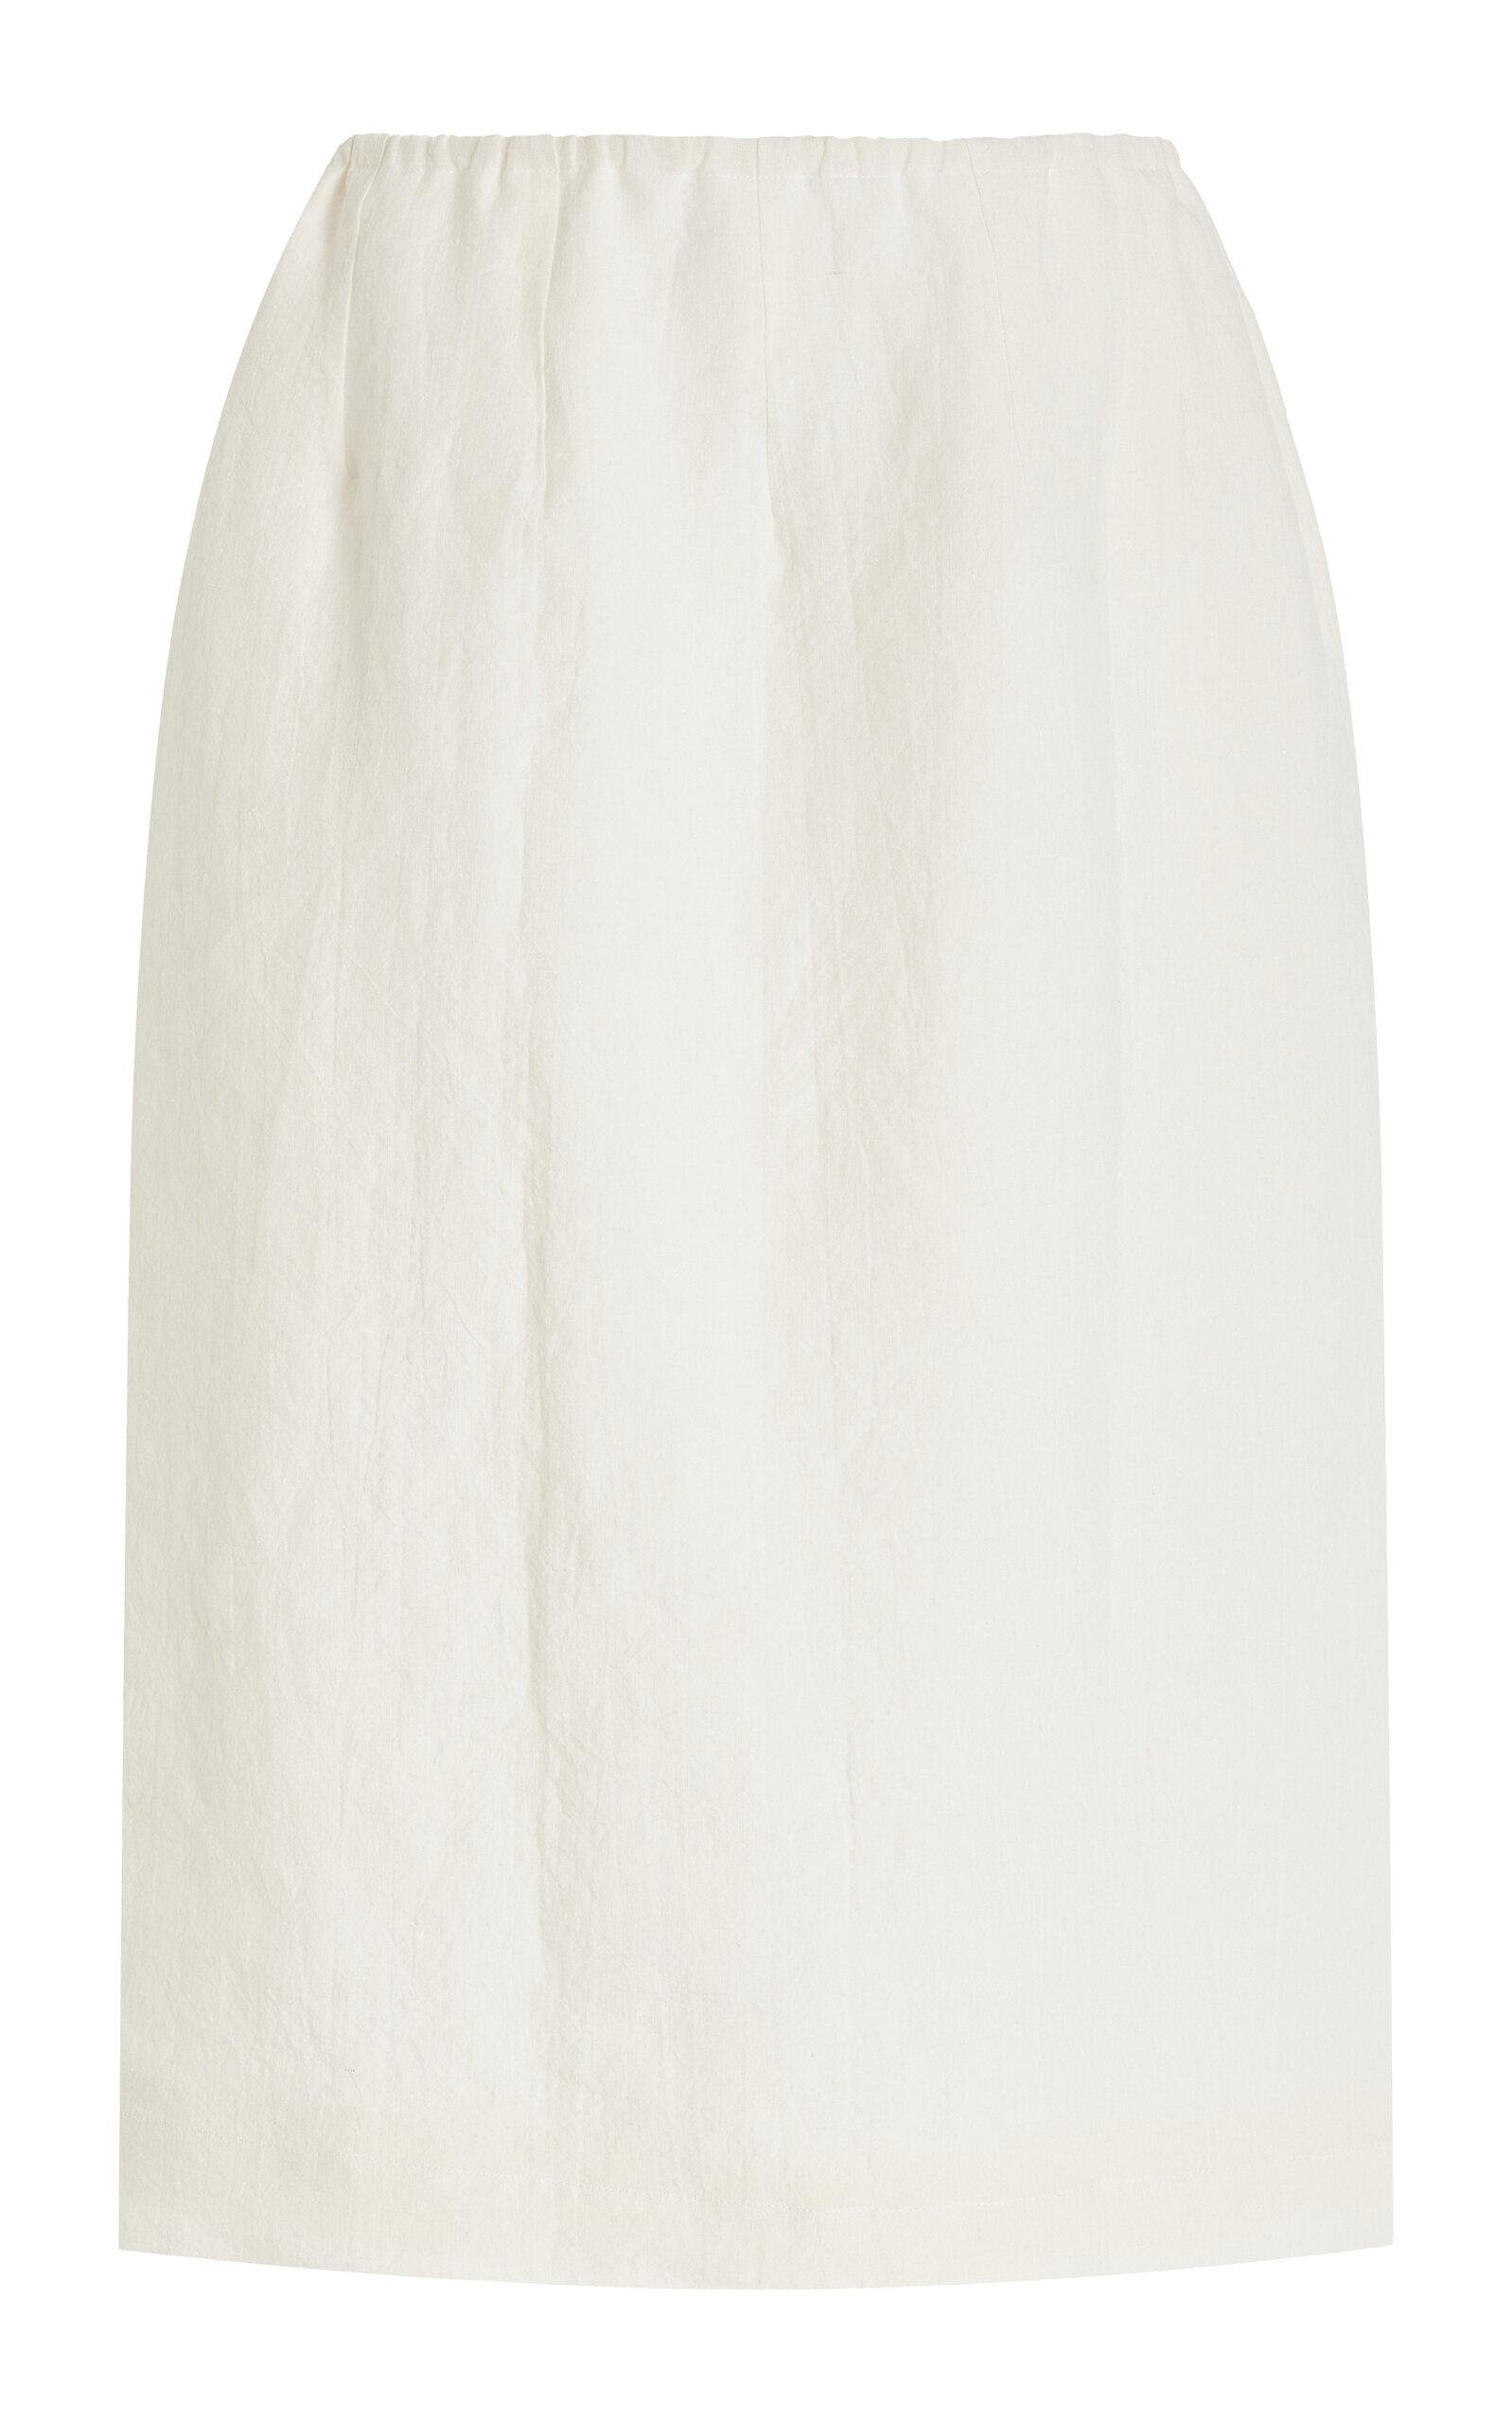 Cvet Preri - Allium Washed Linen Midi Skirt - Ivory - M - Only At Moda Operandi by CVET PRERI